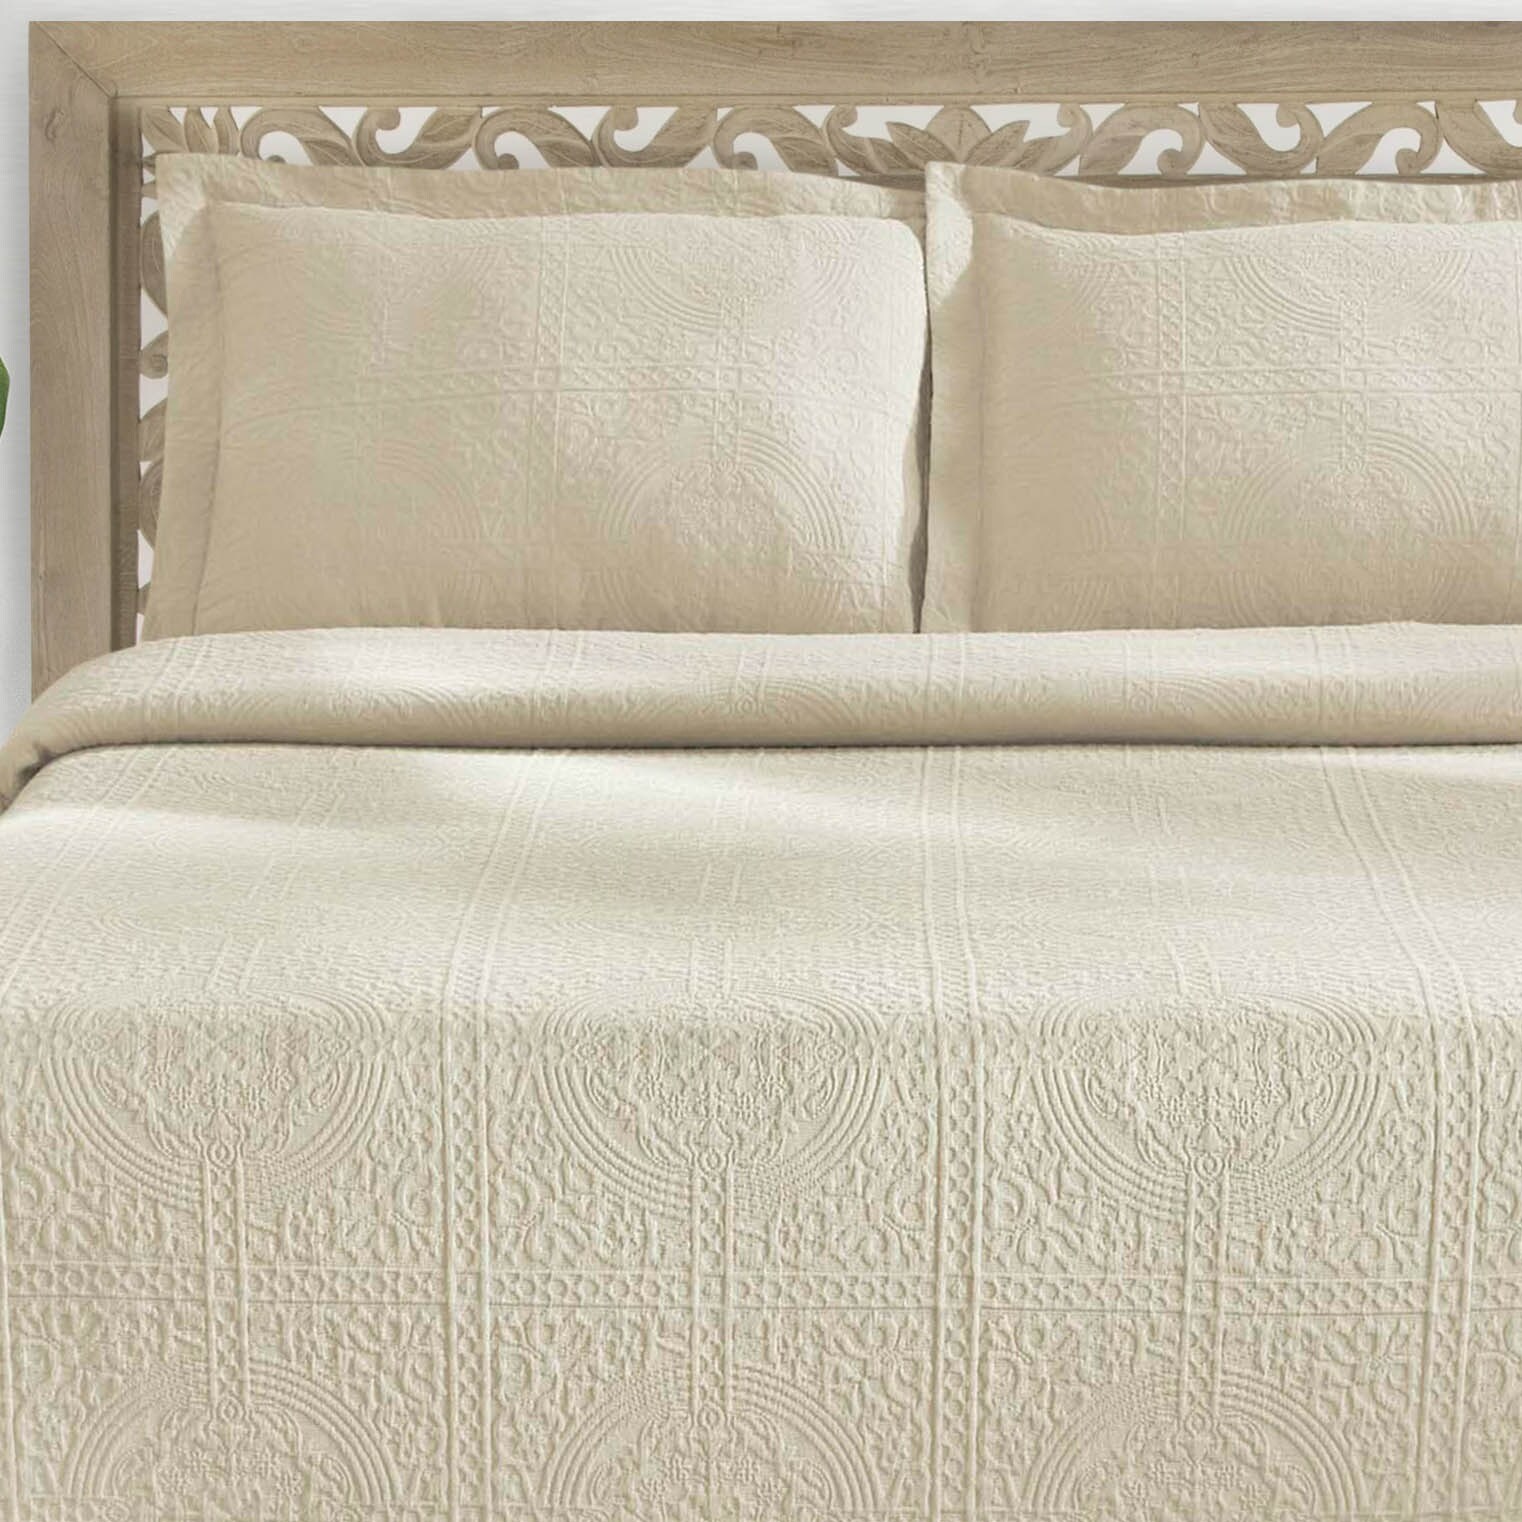 Ivory SUPERIOR Jacquard Matelasse Fleur De Lis 100% Cotton Medallion 3-Piece Bedspread Set Full